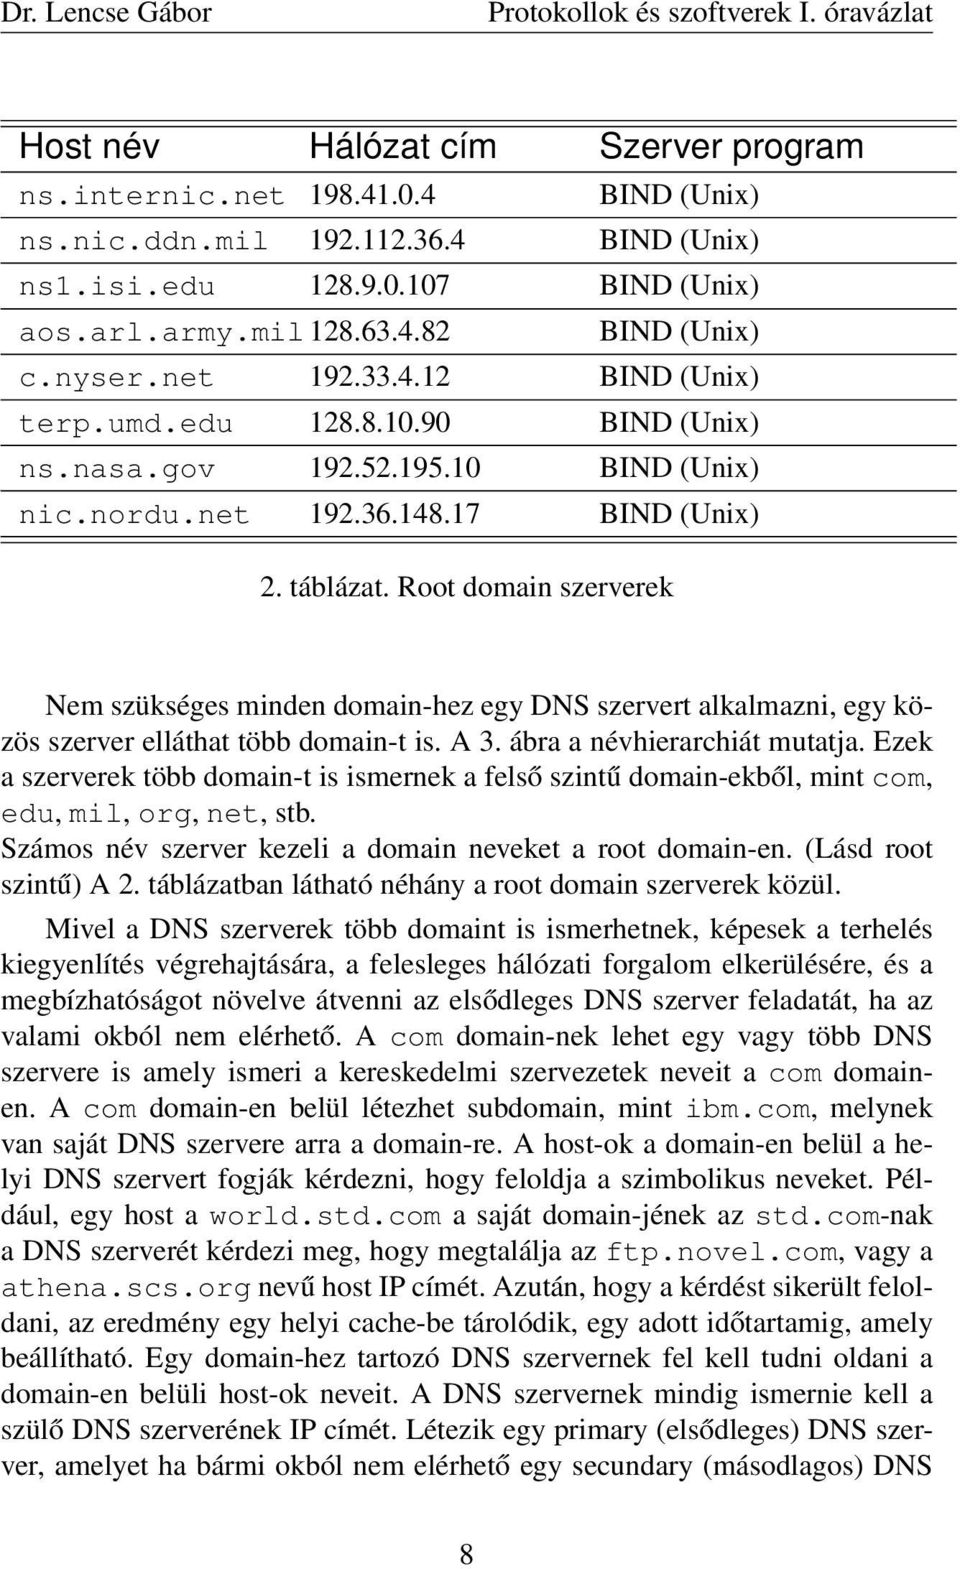 Root domain szerverek Nem szükséges minden domain-hez egy DNS szervert alkalmazni, egy közös szerver elláthat több domain-t is. A 3. ábra a névhierarchiát mutatja.